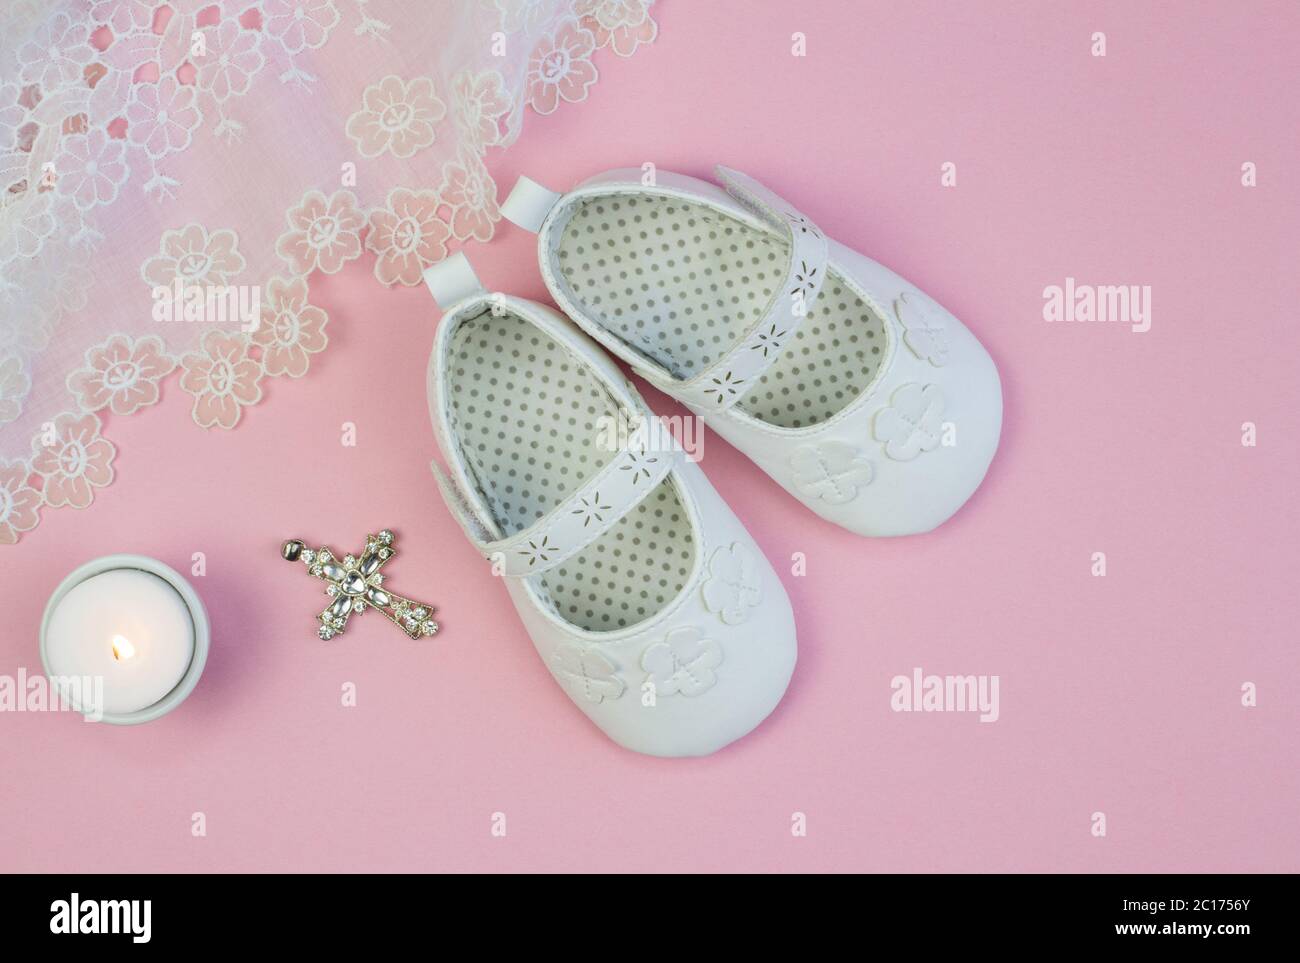 Paar weiße Babyschuhe auf rosa Hintergrund mit Taufe Spitzenkleid und Kerze  Stockfotografie - Alamy